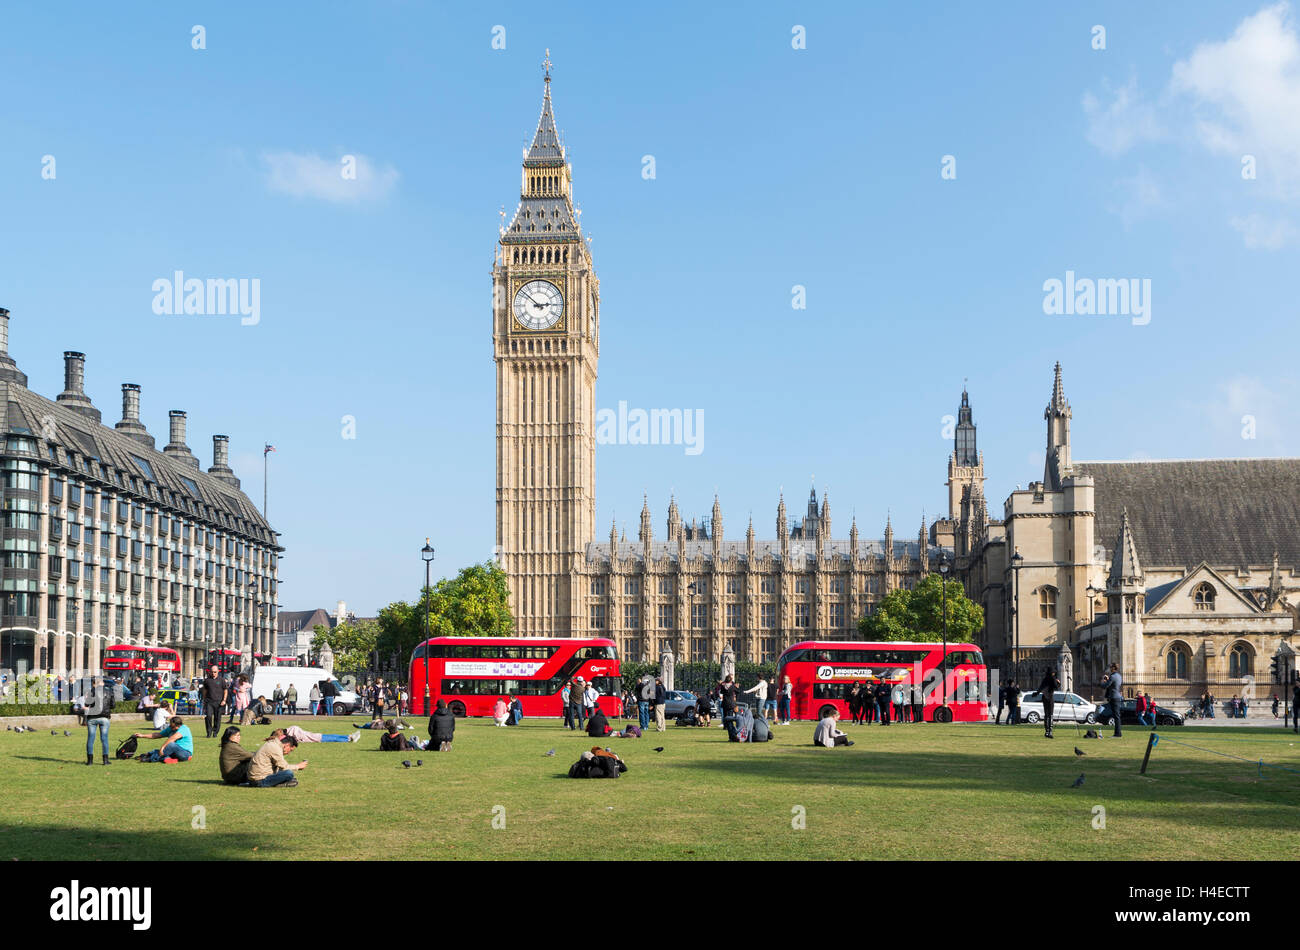 Vistas a la Plaza del Parlamento jardín hacia el Big Ben y el Palacio de Westminster / Casas del Parlamento con autobuses rojos Foto de stock